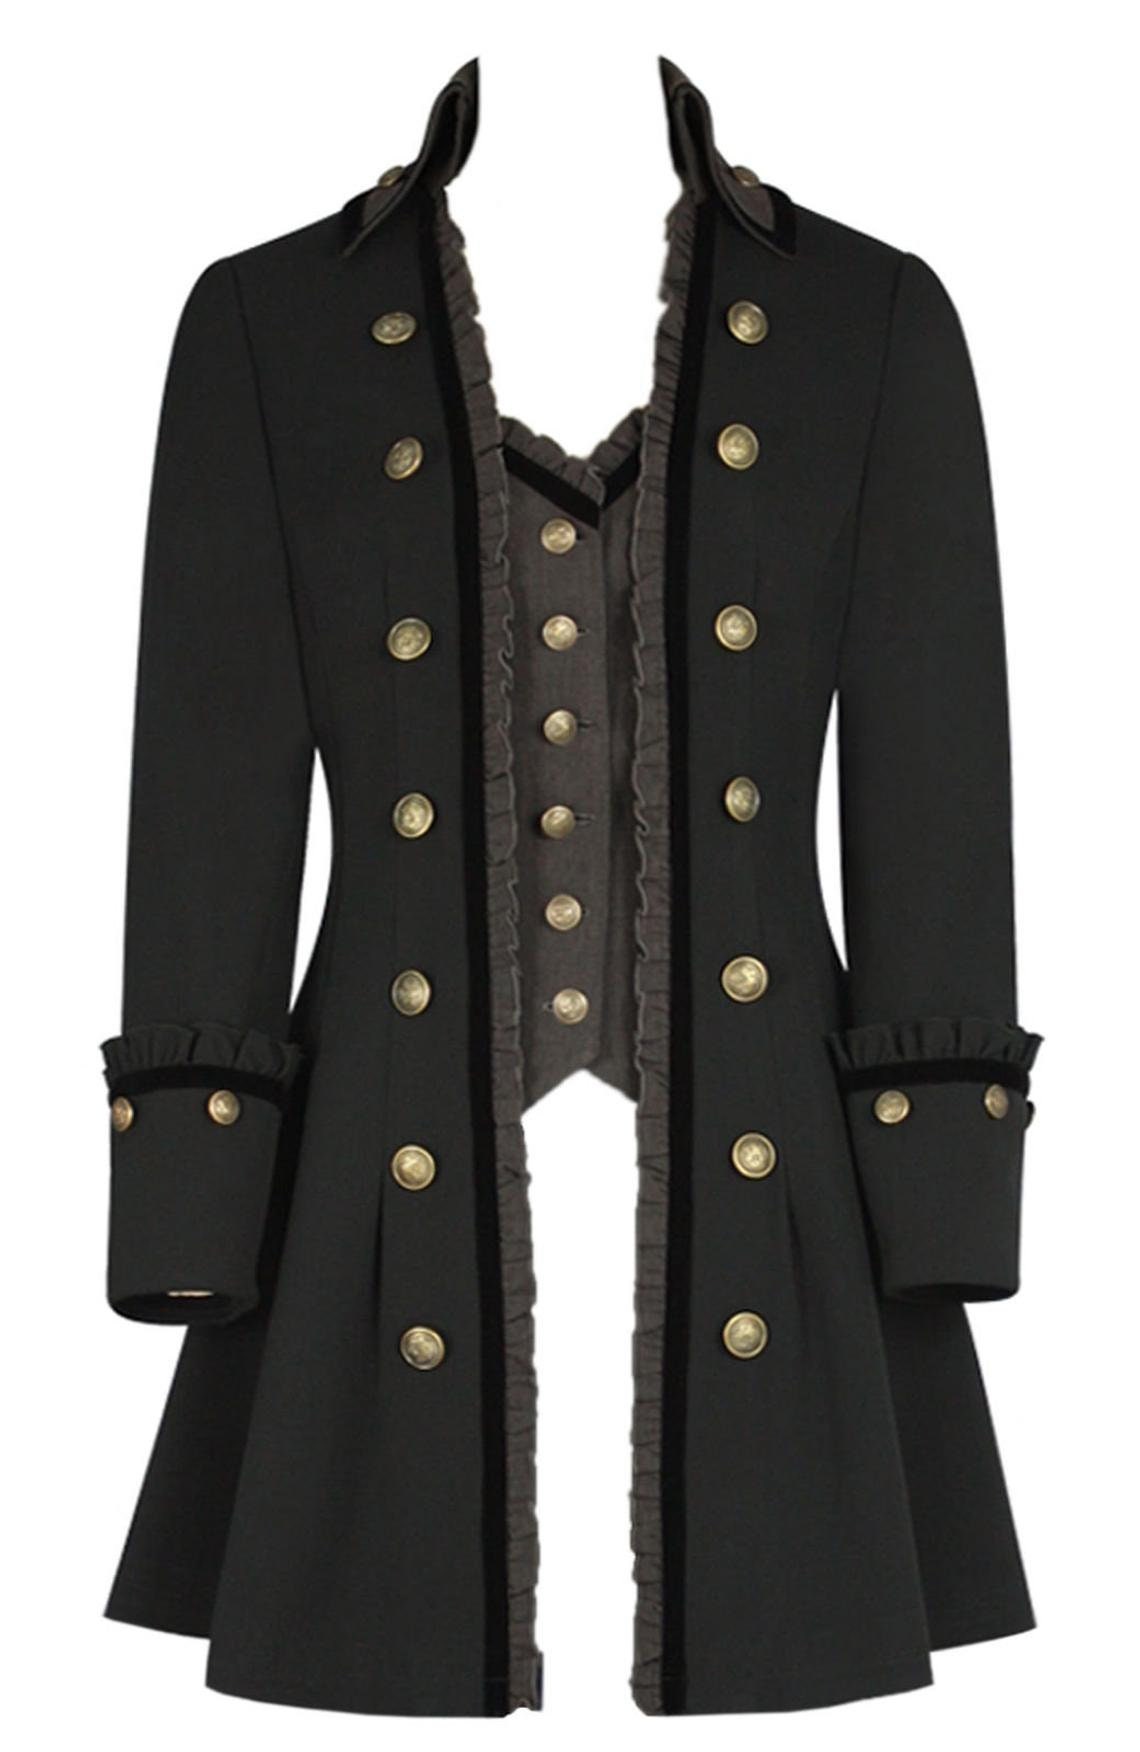 PLUS Size Steampunk Gothic Military Jacket Coat Grey Black | Etsy